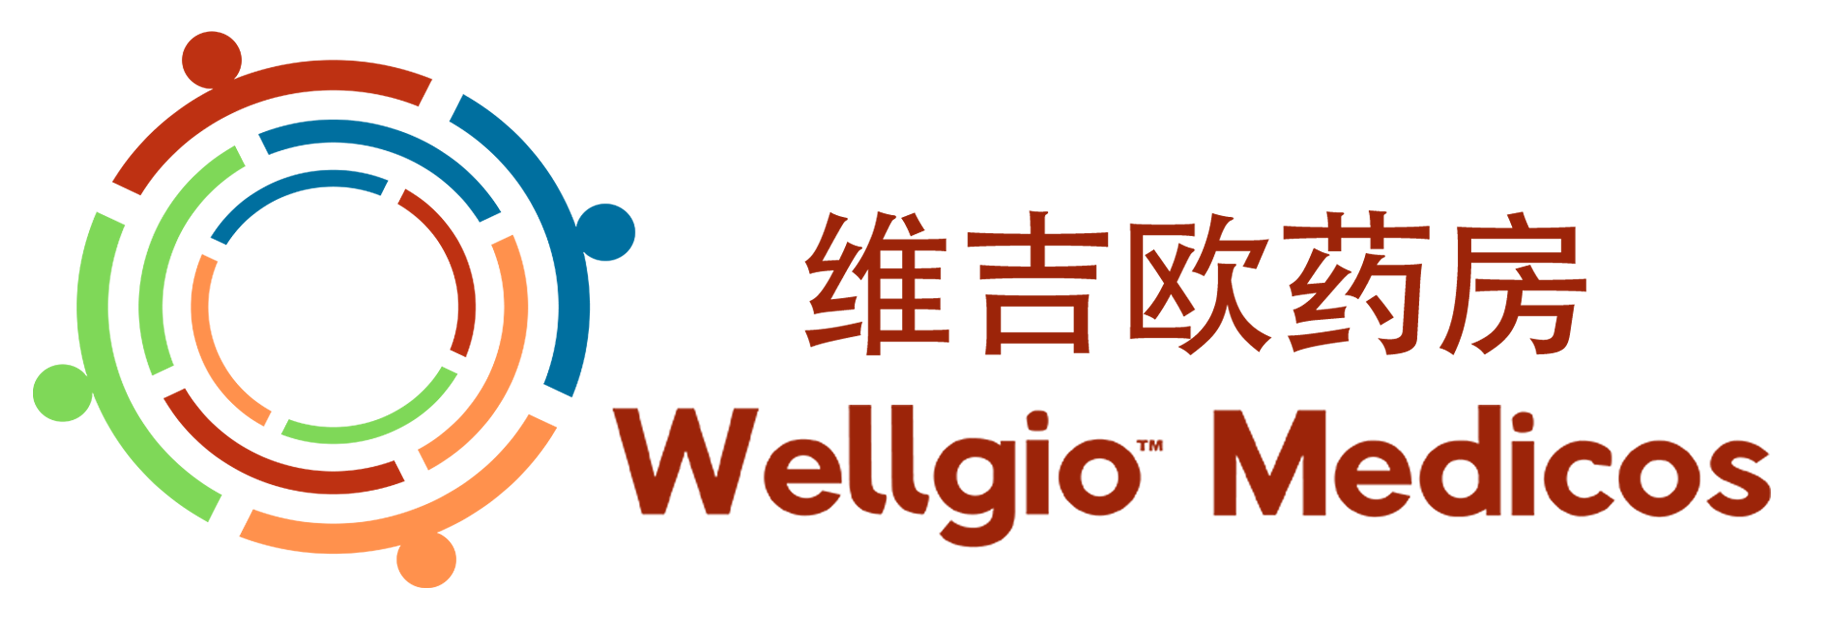 印度维吉欧药房-Wellgio Pharmacy中文站